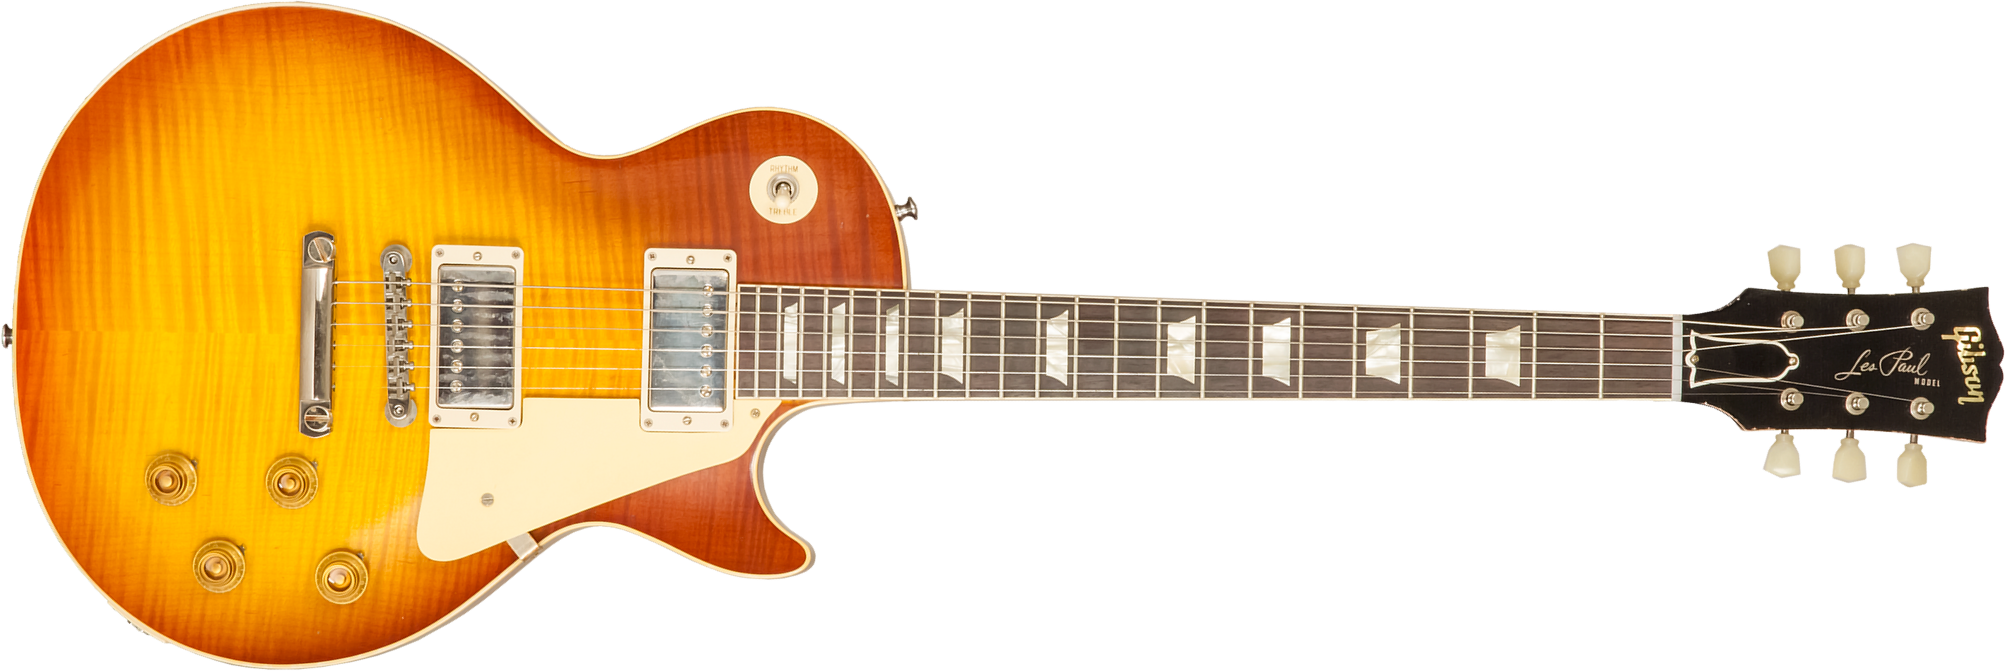 Gibson Custom Shop M2m Les Paul Standard 1959 2h Ht Rw #94898 - Murphy Lab Light Aged Royal Tea Burst - Guitare Électrique Single Cut - Main picture